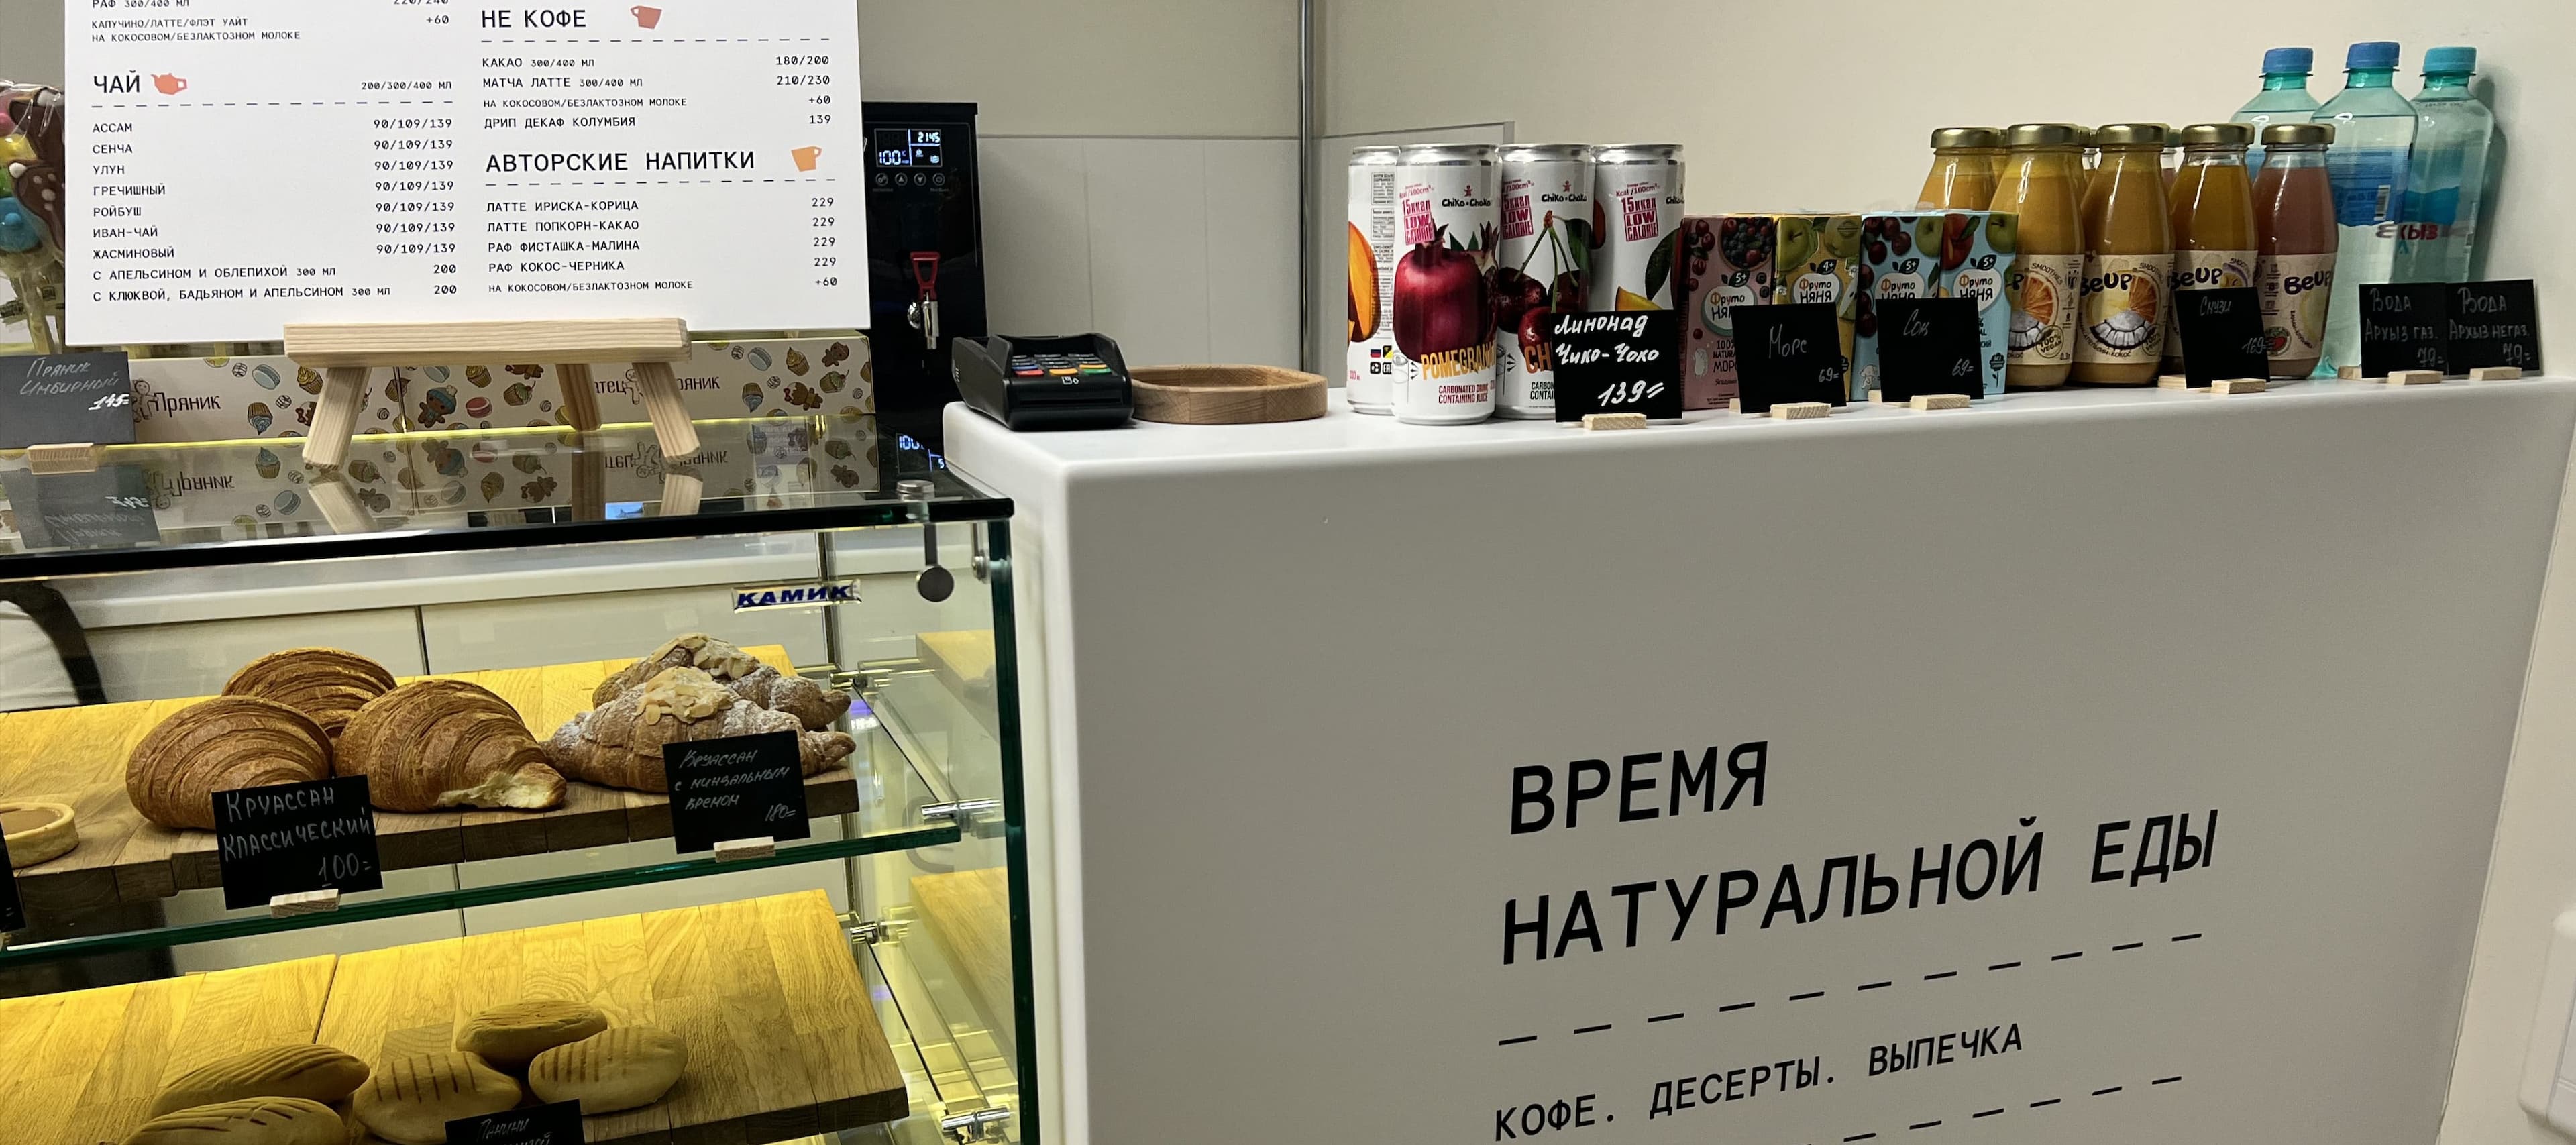 Фото новости: "Основатели петербургской «Чайной ложки» развернули сеть буфетов в поликлиниках Москвы"